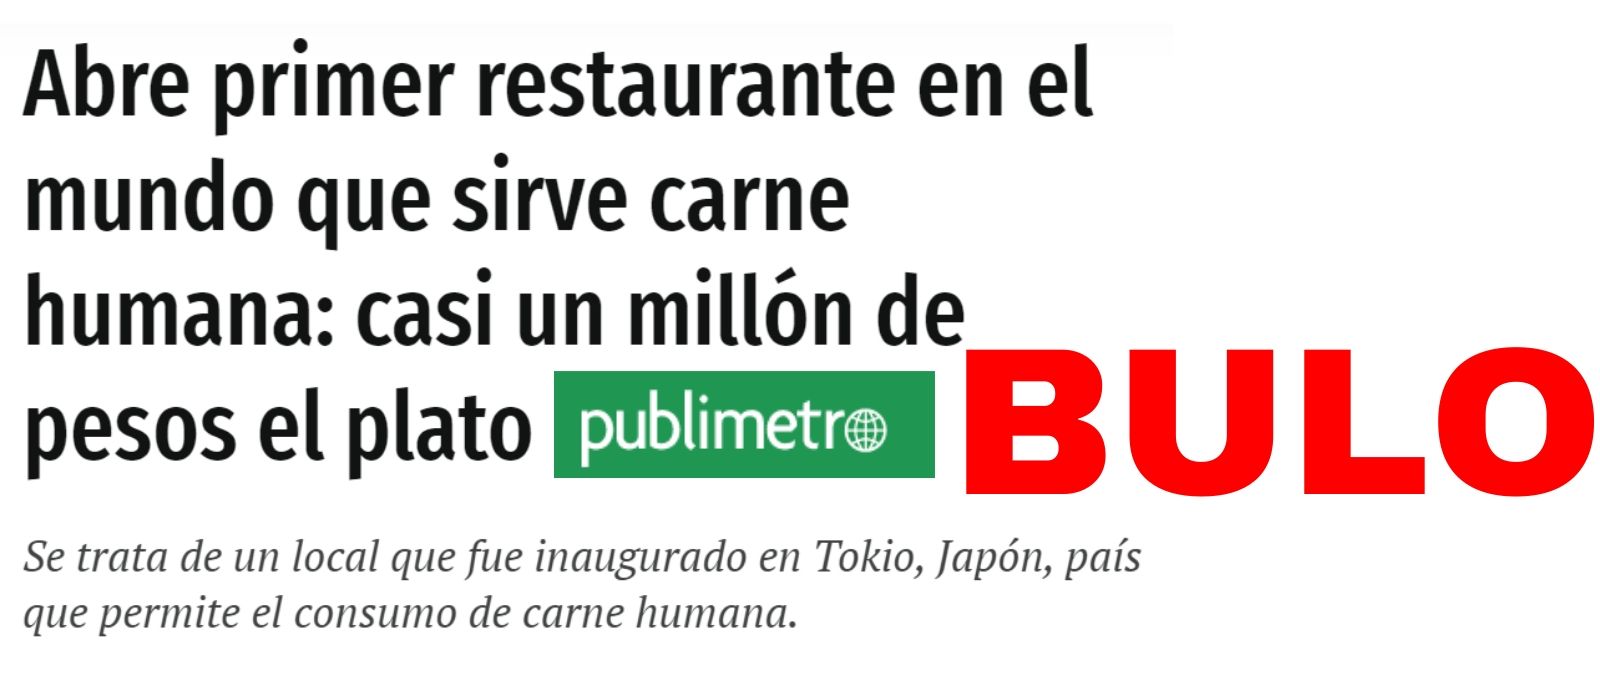 Resultado de imagen de No, no hay ningún restaurante en Japón que sirva carne humana y hacerlo no es legal